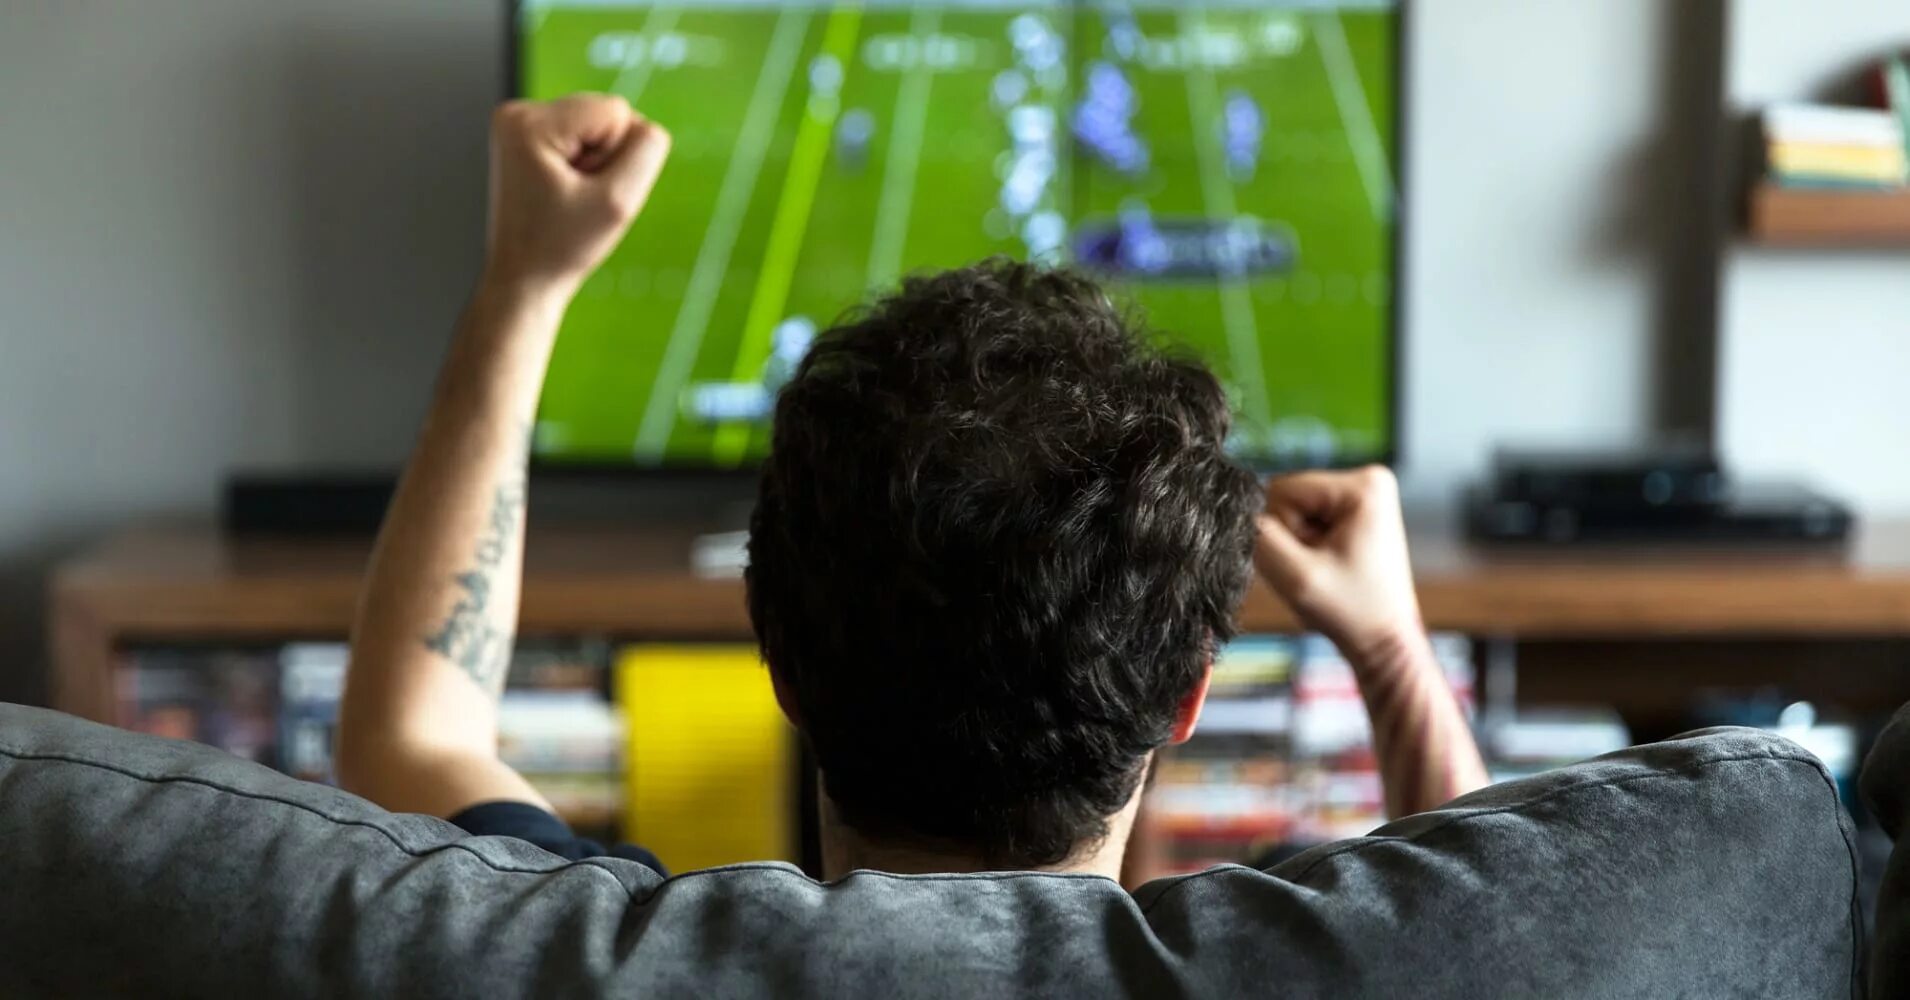 Футбол по телевизору. Человек телевизор. Человек перед телевизором. Телевизор футбол. Телевизор смотрим футбол